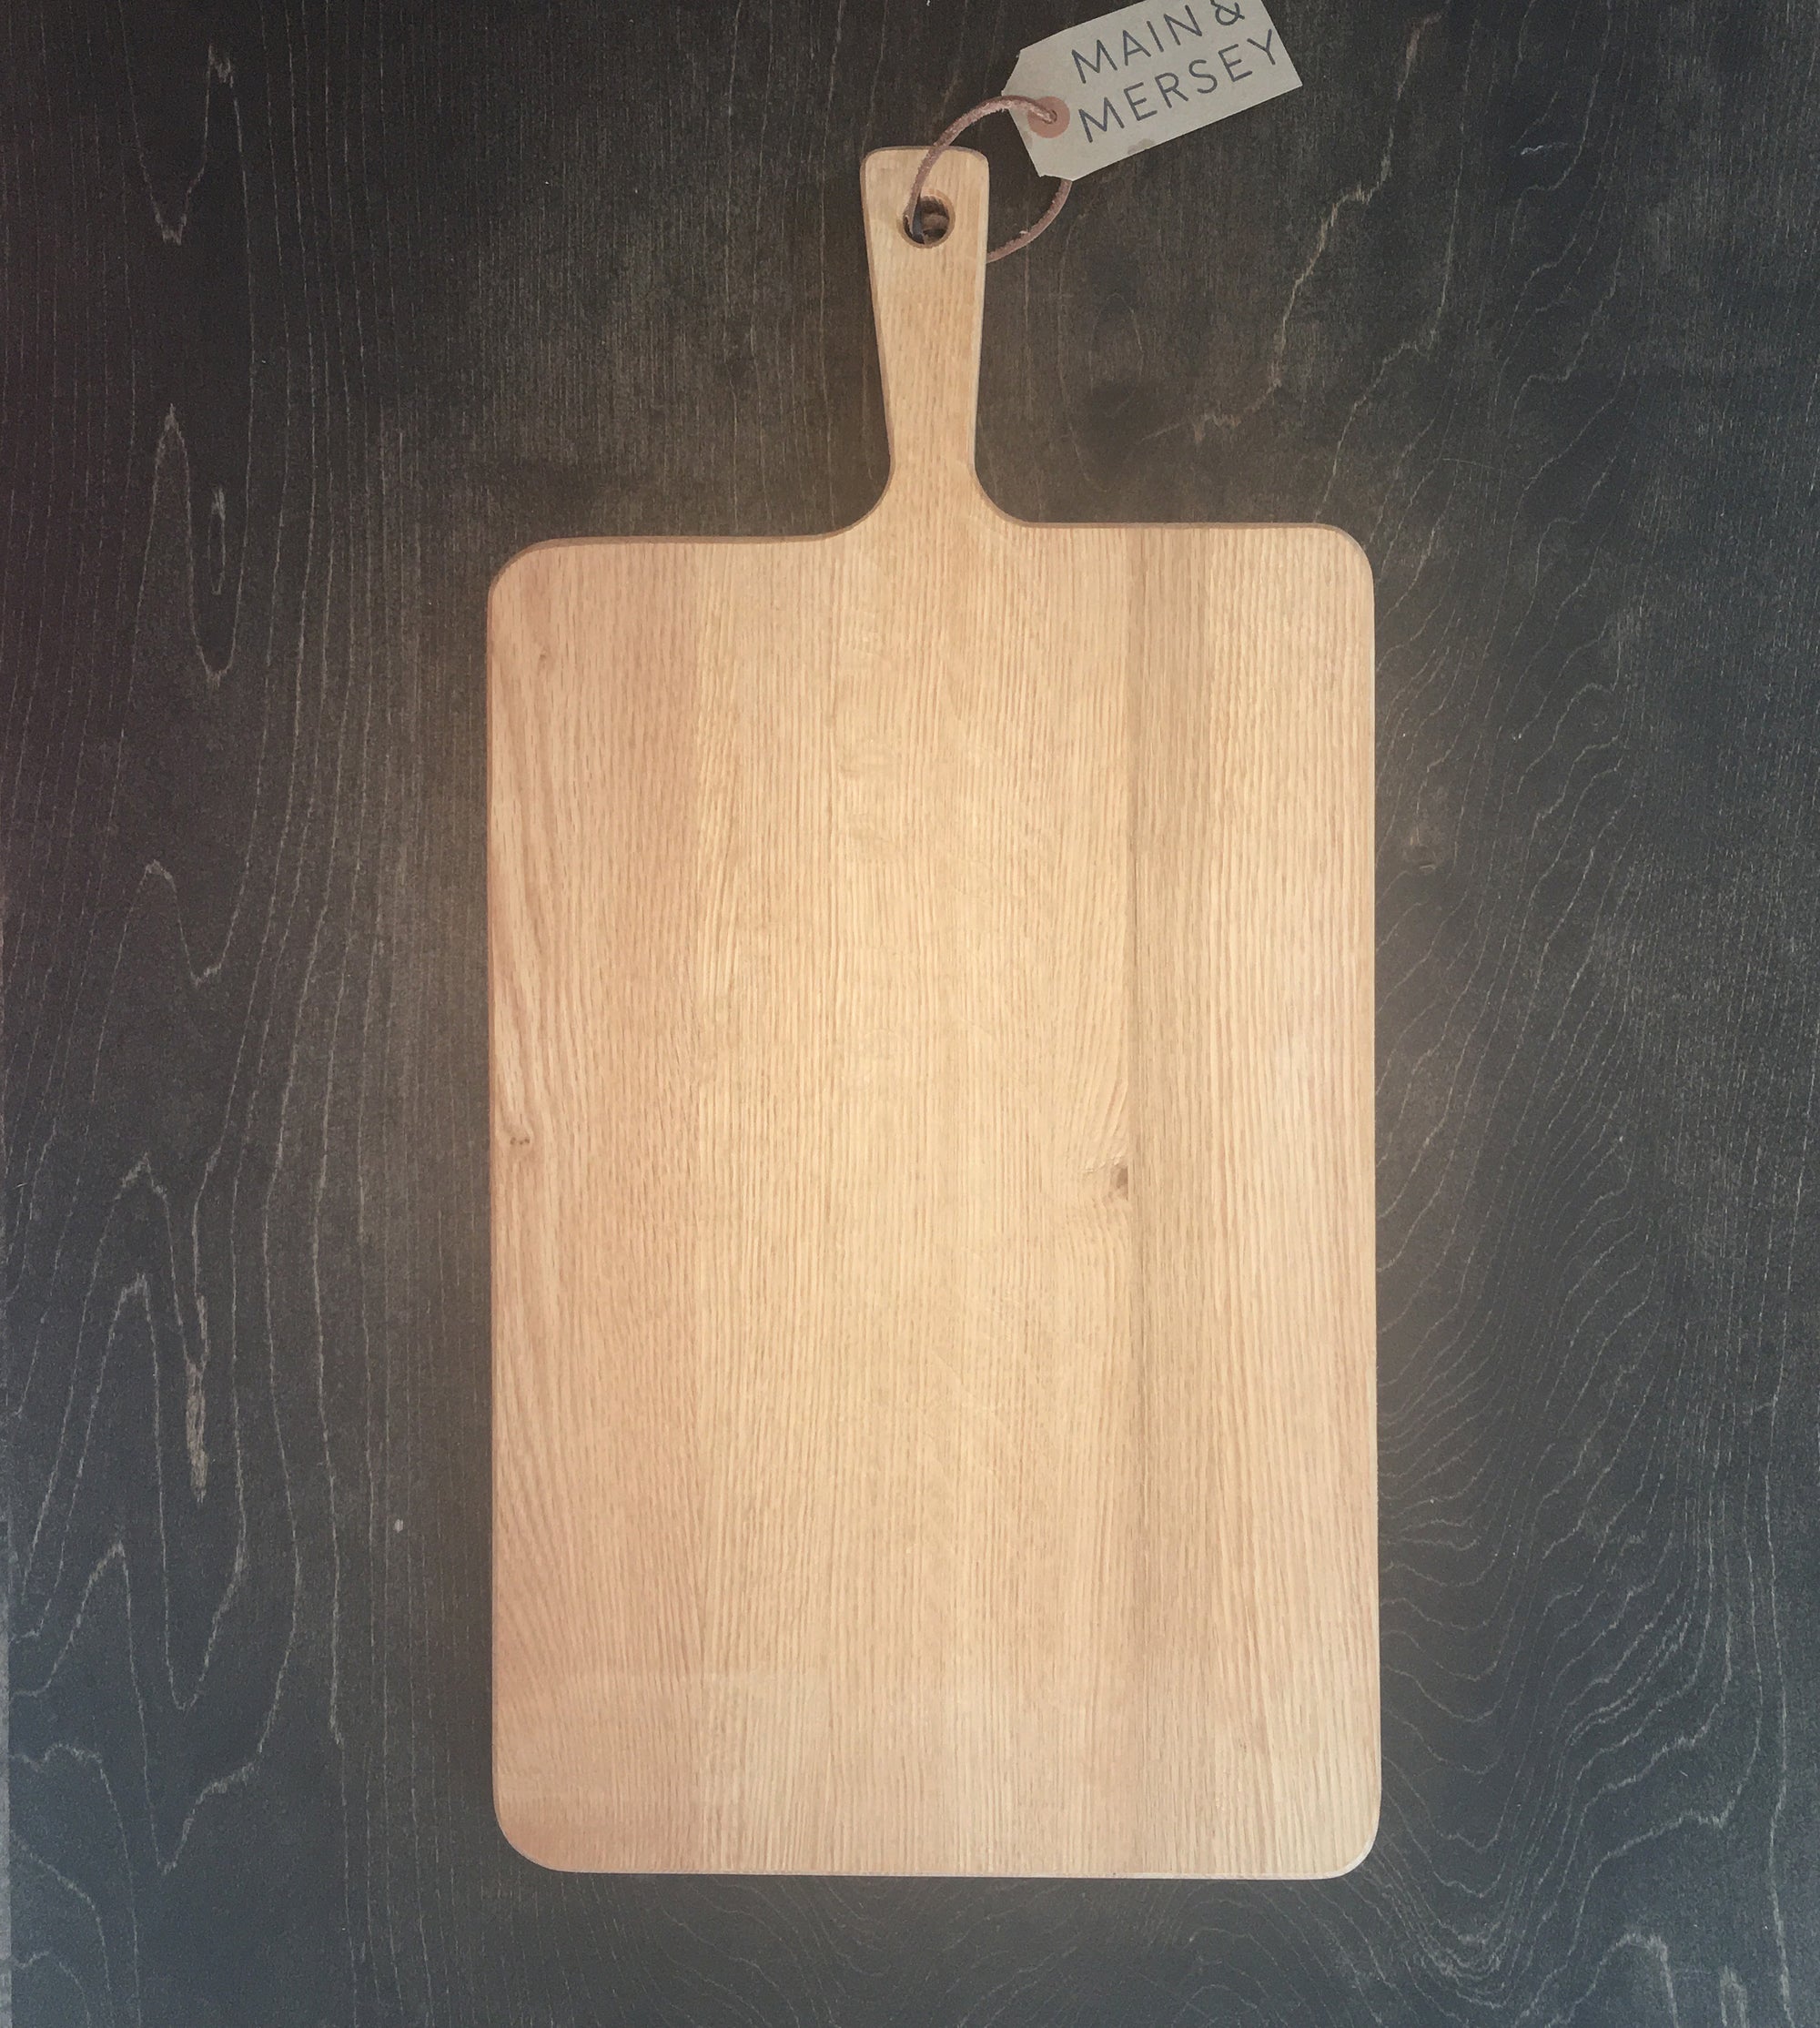 Large Oak Cutting Board with Handle 23" x 12" width x depth 3/4"(57.5x30x2cm)